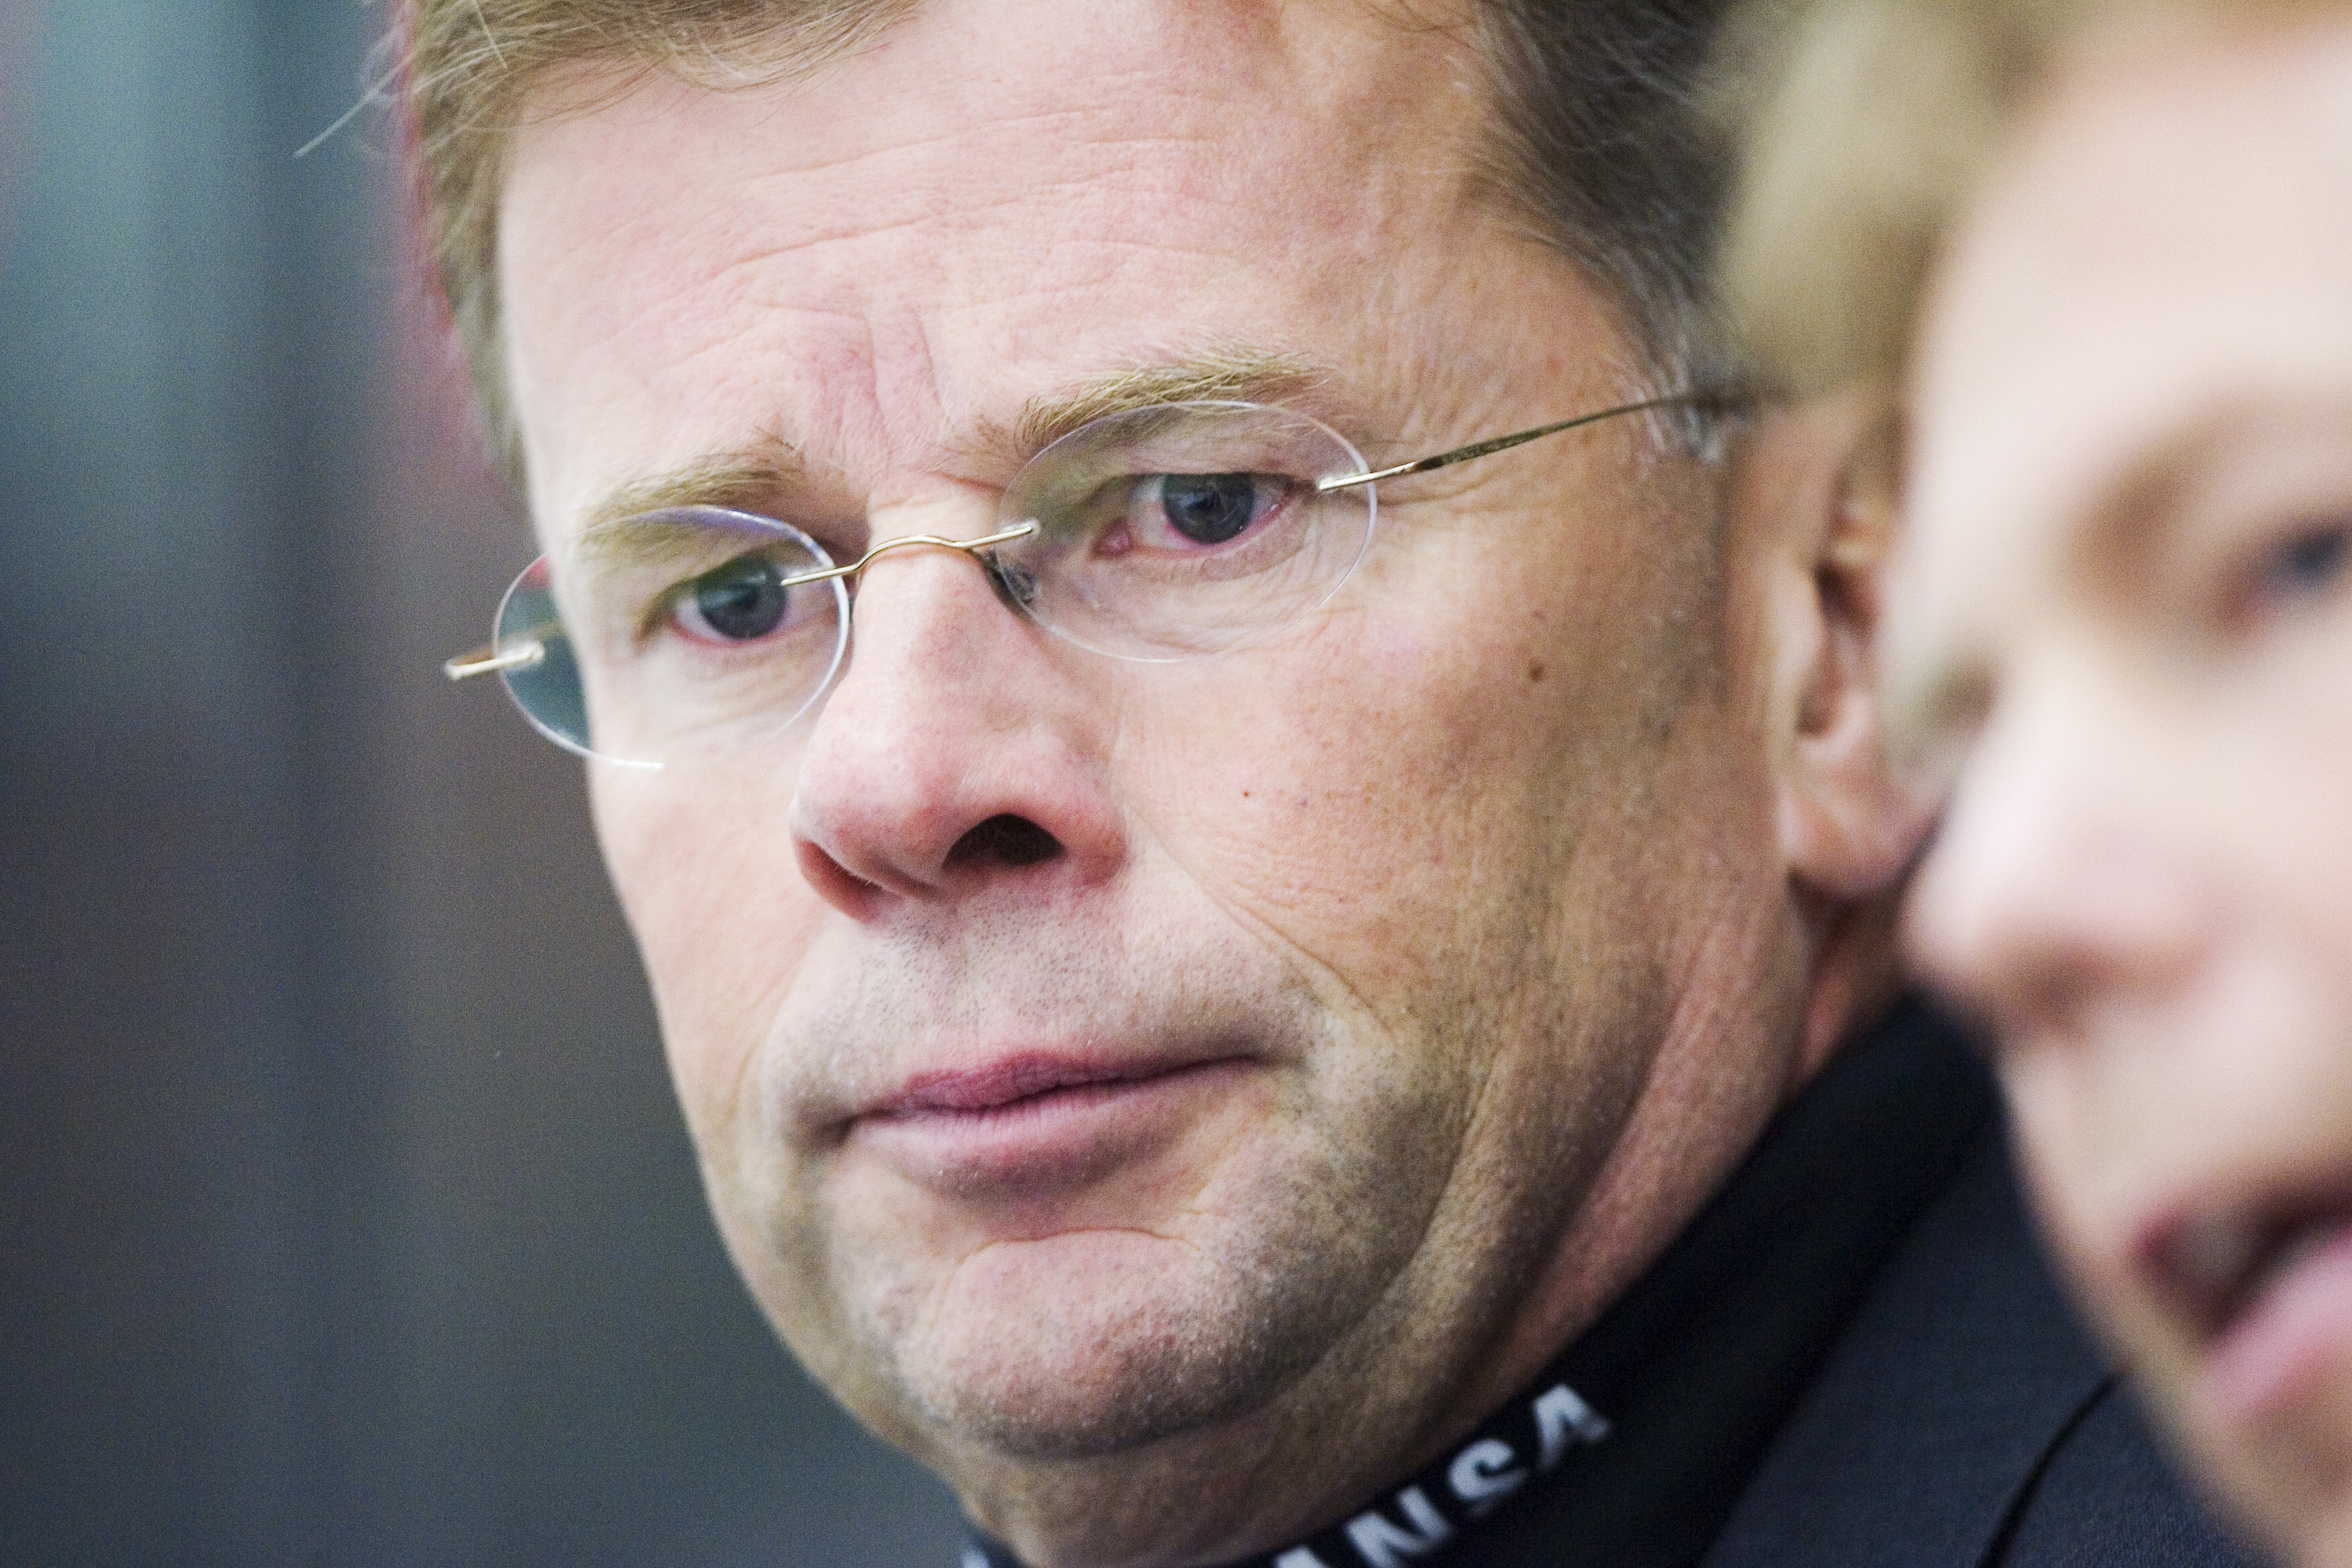 Luleås sportchef Lars "Osten" Bergström blev polisanmäld för hets mot folkgrupp efter Västerbotten Folkblads artiklar.